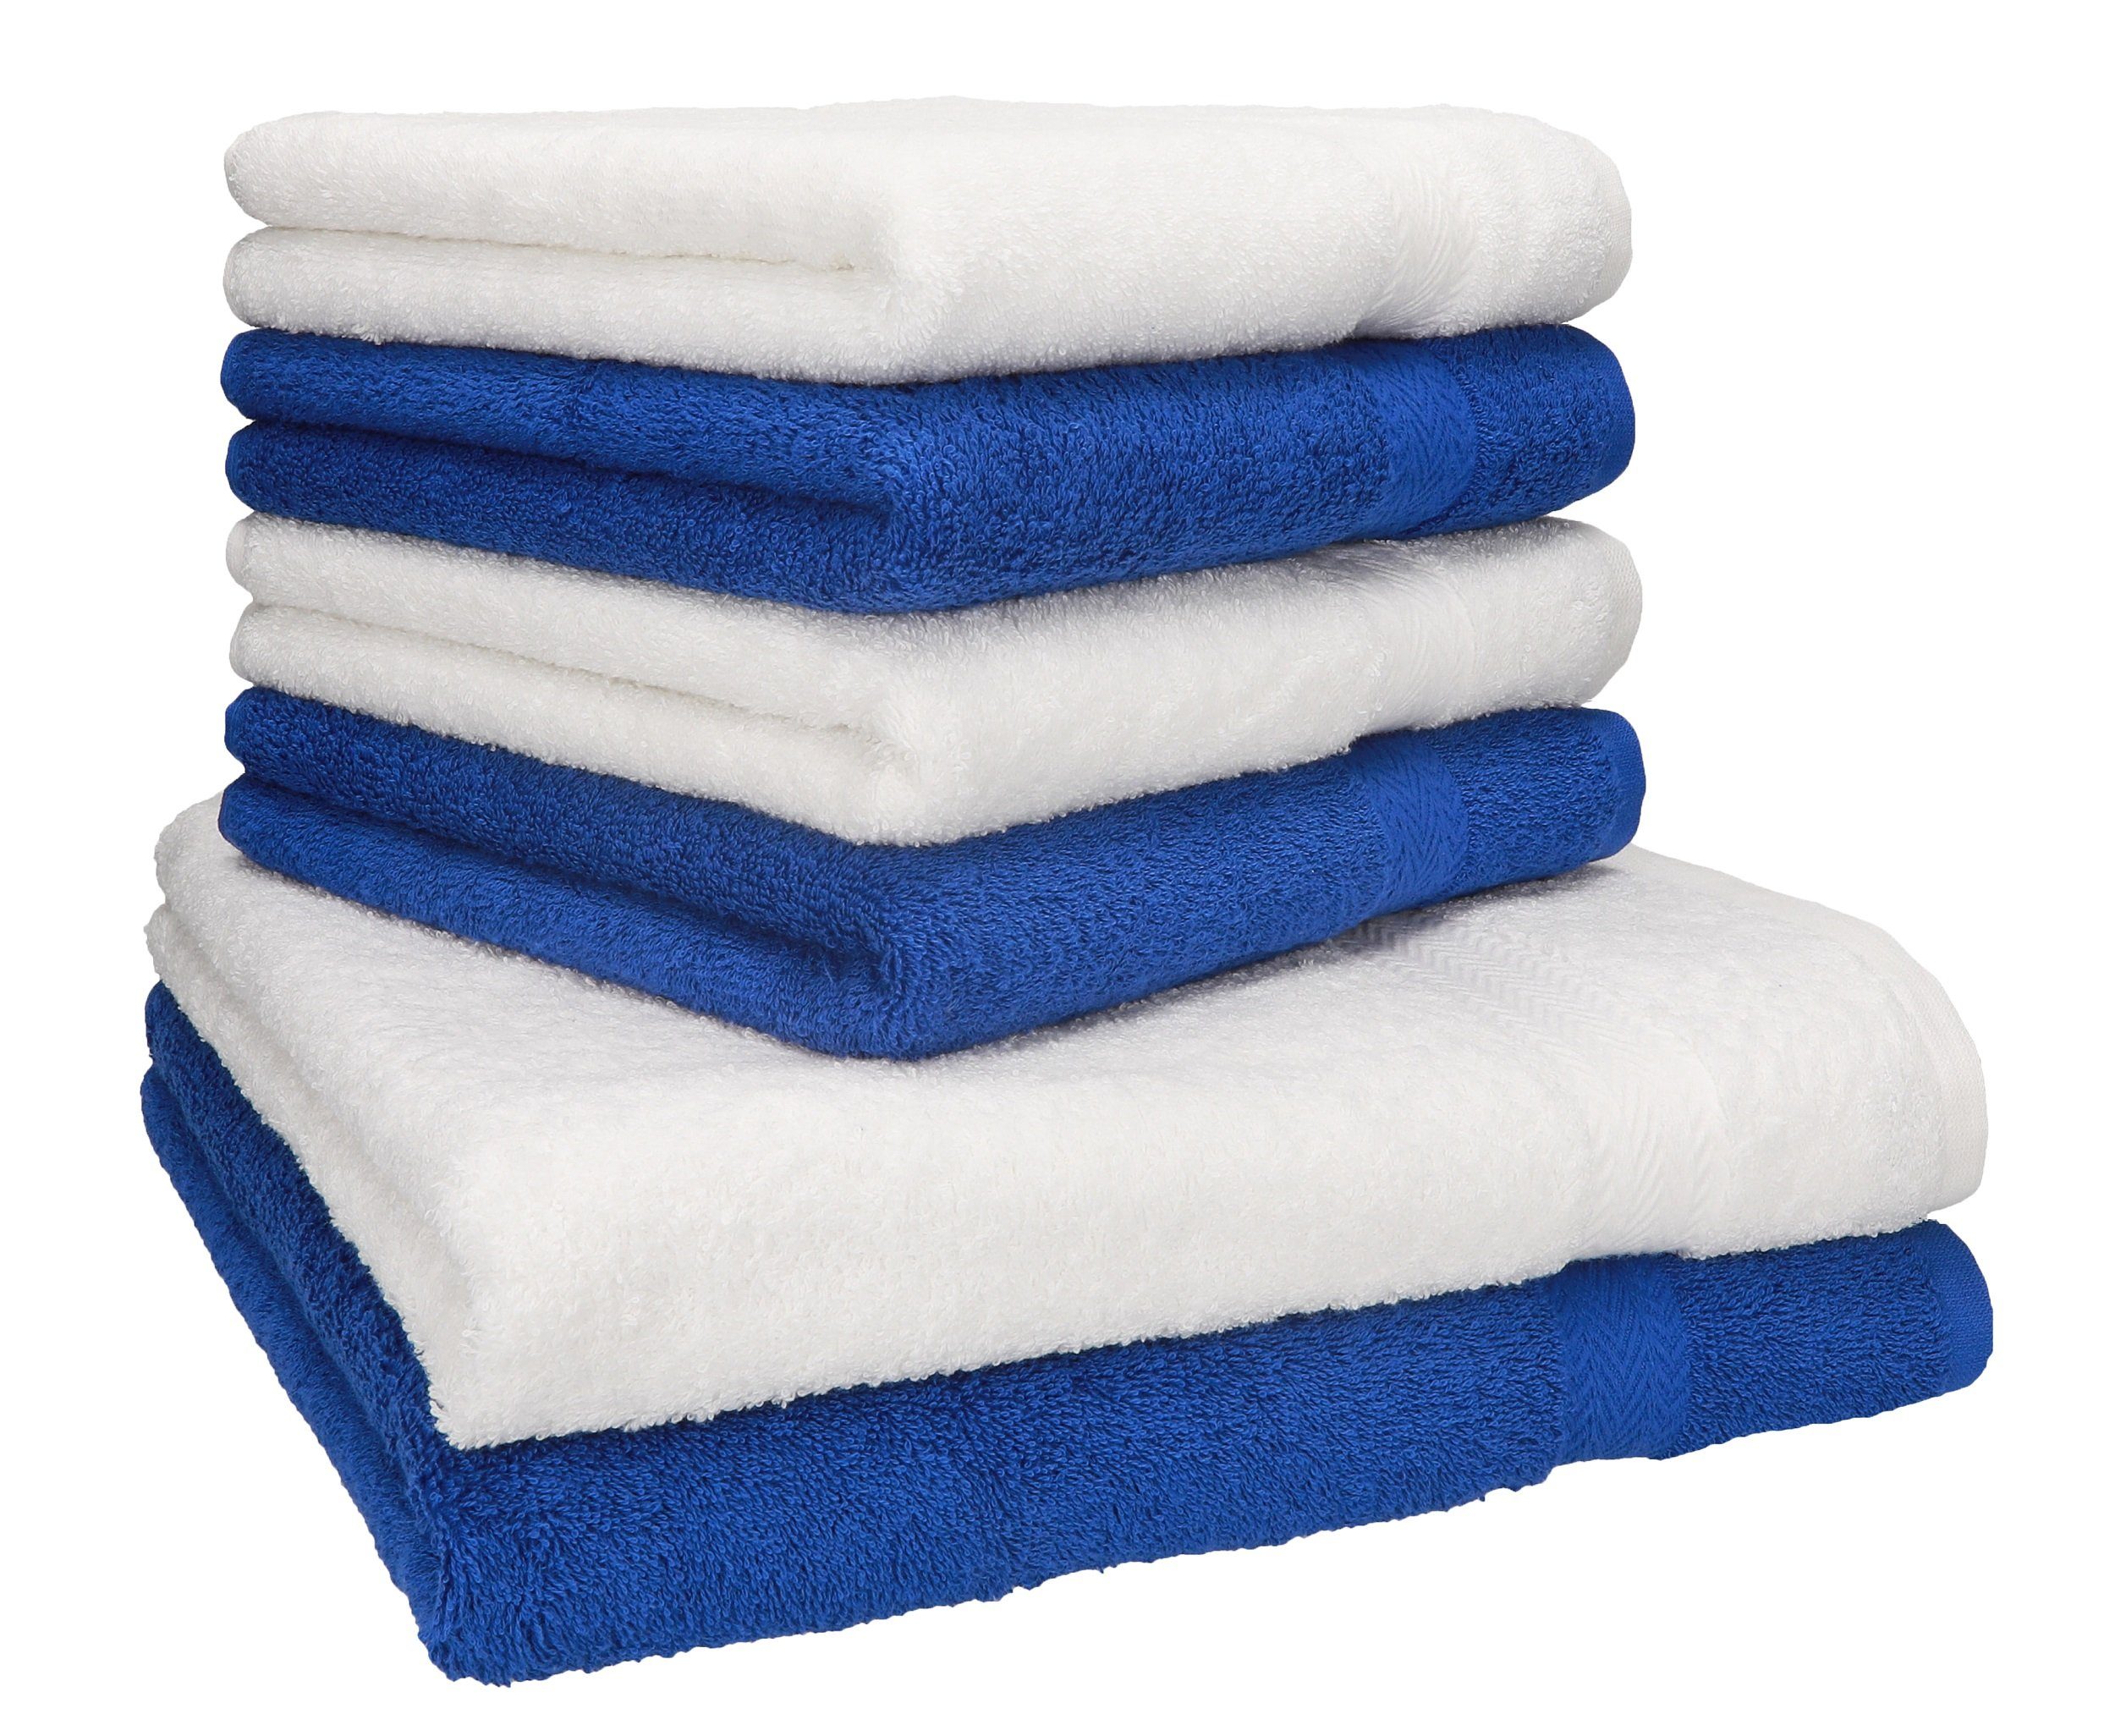 Betz Handtuch Set 6-TLG. 4 Handtücher 100% Farbe 100% Baumwolle blau Baumwolle Handtuch-Set weiß, Premium 2 und Duschtücher